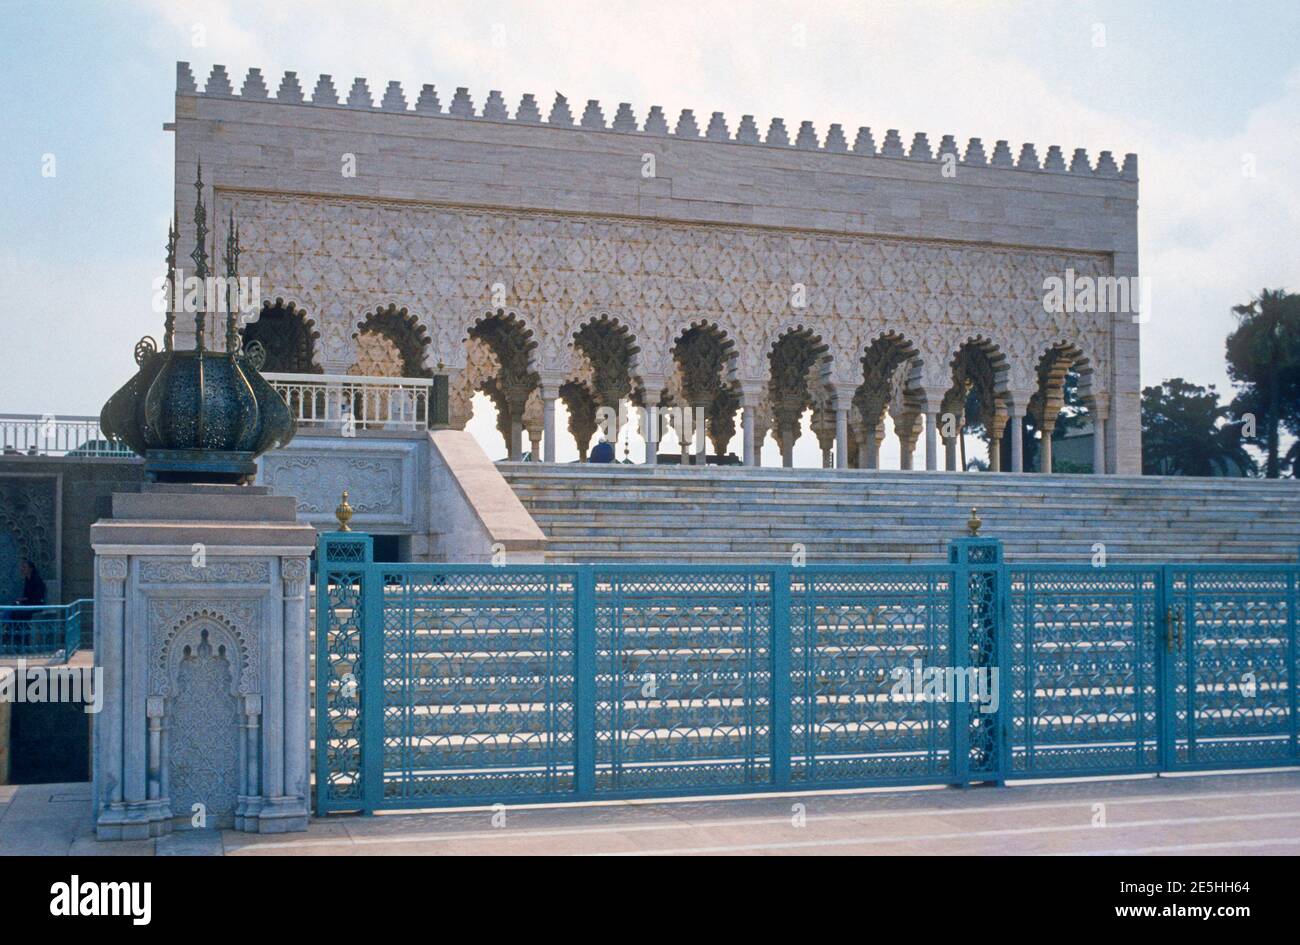 1984 Maroc Rabat - Mausolée de la tombe de Mohammed V, Rabat l'Atrium-Temple de Mohammed V. Le mausolée de Mohammed V est un mausolée situé de l'autre côté de la Tour Hassan, sur l'esplanade Yacoub al-Mansour à Rabat, Maroc, Rabat, Maroc, Afrique du Nord Banque D'Images